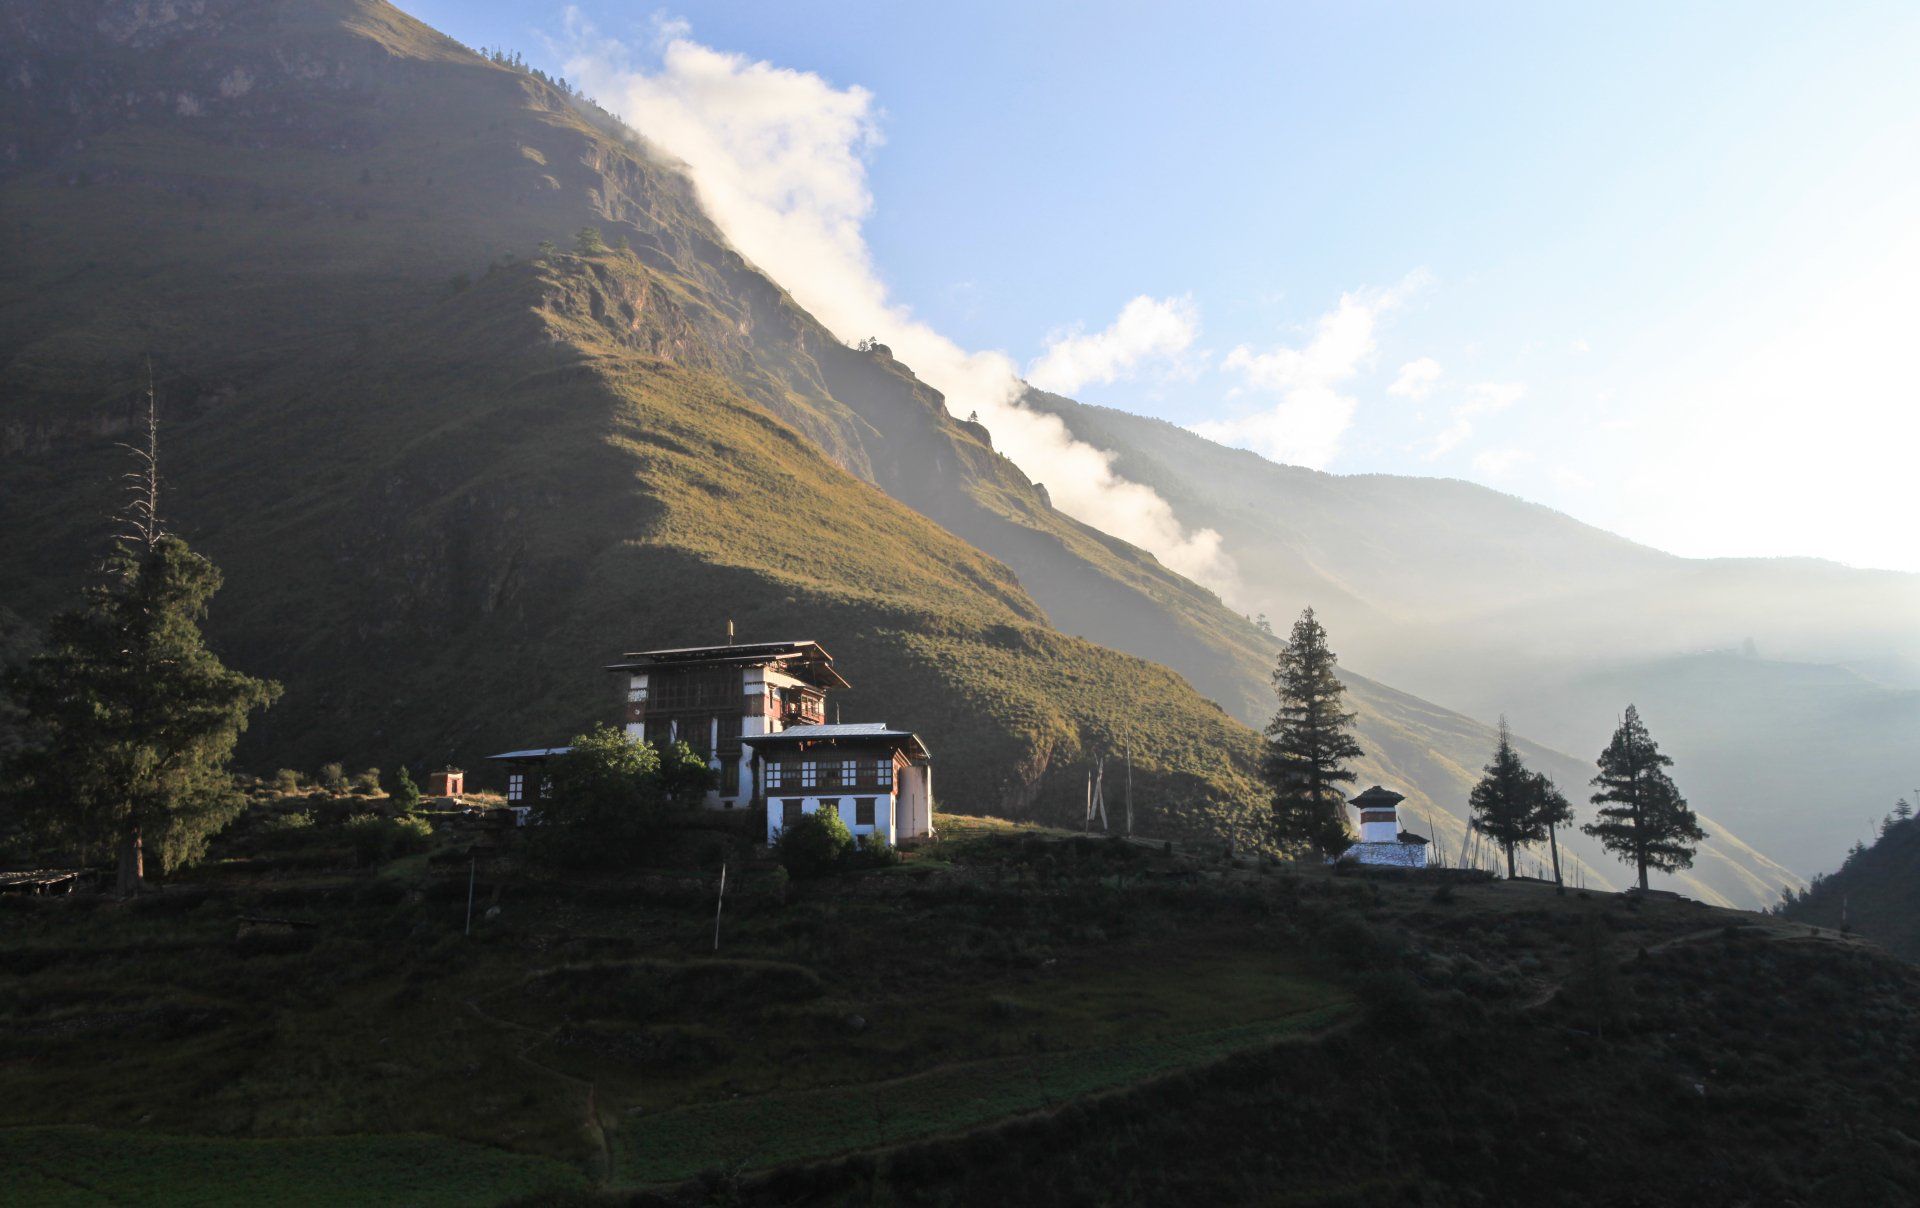 Tachogang Lhakhang between Paro and Thimphu highway